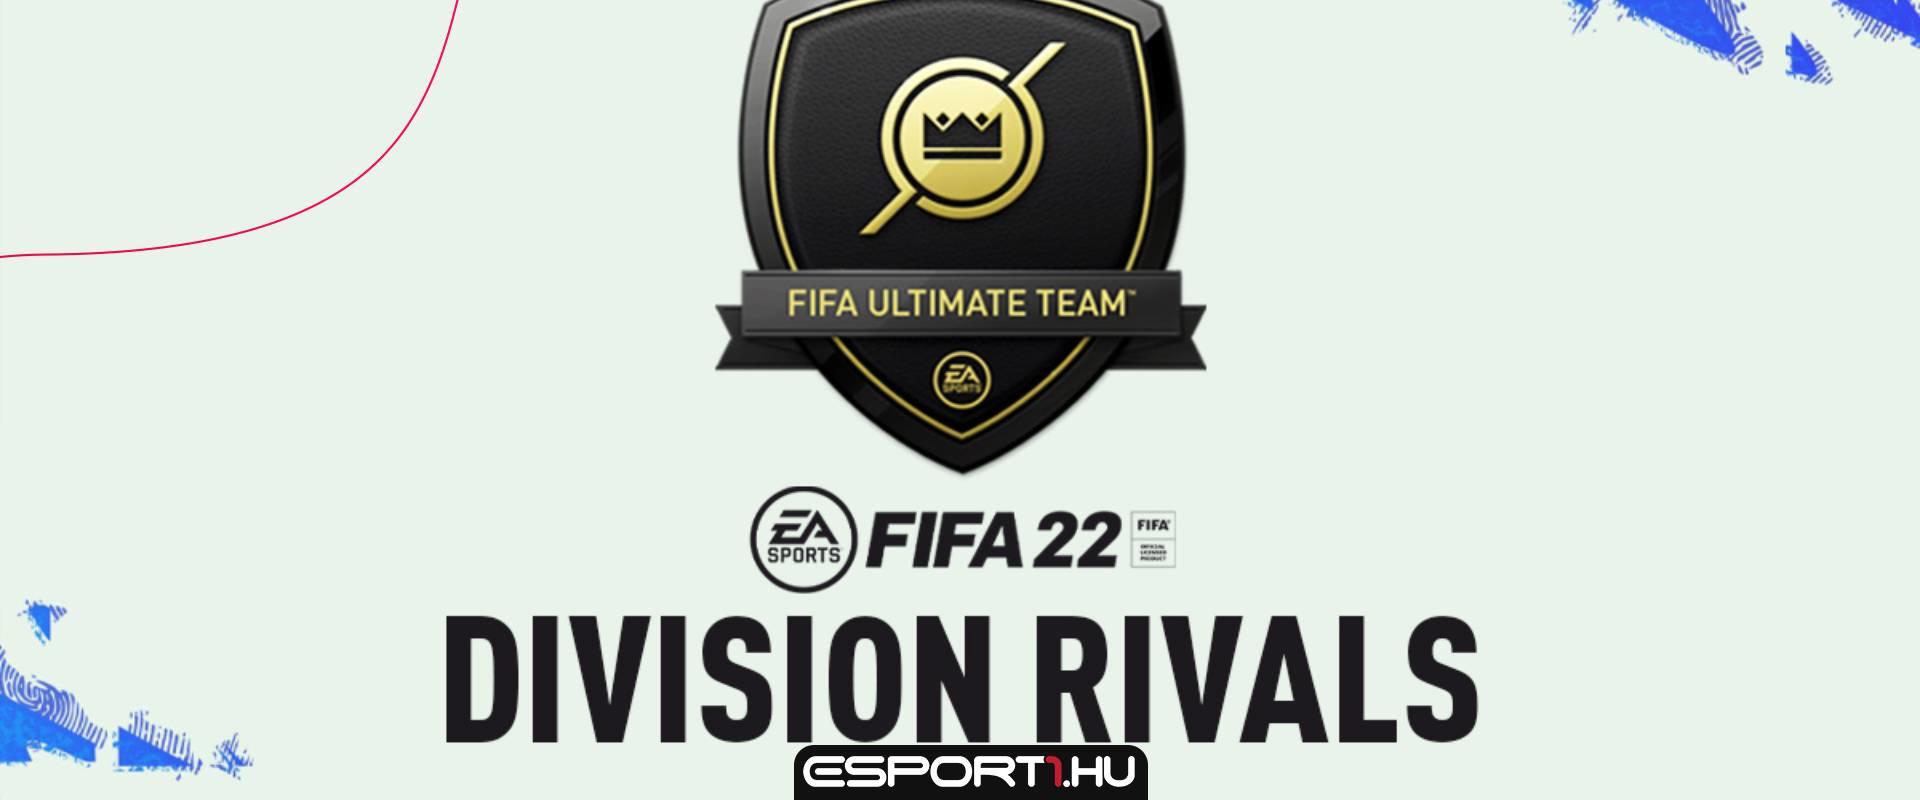 Győzelmi sorozat és új rank rendszer, így változik meg a Division Rivals a FIFA 22-ben